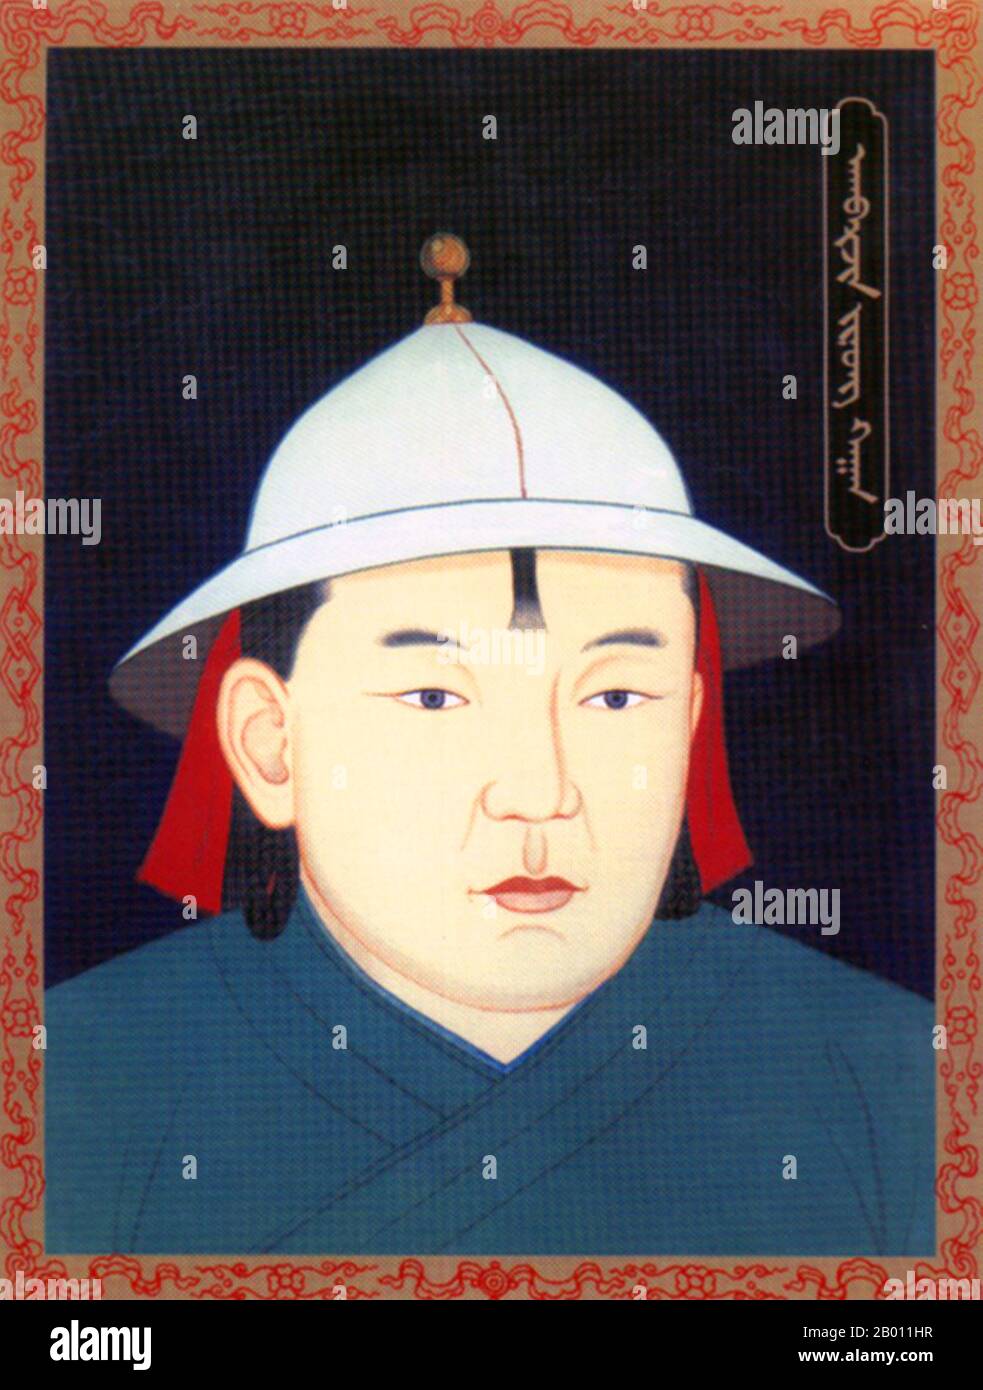 Mongolei: Agbarjin (Agvarjin) Khan, temporärer khagan der Nördlichen Yuan-Dynastie (r. 1454), 20. Jahrhundert. Agbarjin (Agvarjin) Jonon oder Akbarjin Jonon (1423-1454) war ein khagan-Kläger der vierundvierzig der Mongolei. Er war ein jüngster Bruder von Tayisung Khagan Toghtoa Bukha, den er auf Geheiß der Oiraten verriet und stürzte und 1454 kurz Khagan wurde. Die Oiraten verrieten und ermordeten ihn dann prompt, da sie ihn für nicht vertrauenswürdig glaubten, da er sich gegen seinen eigenen Bruder gewandt hatte. Stockfoto